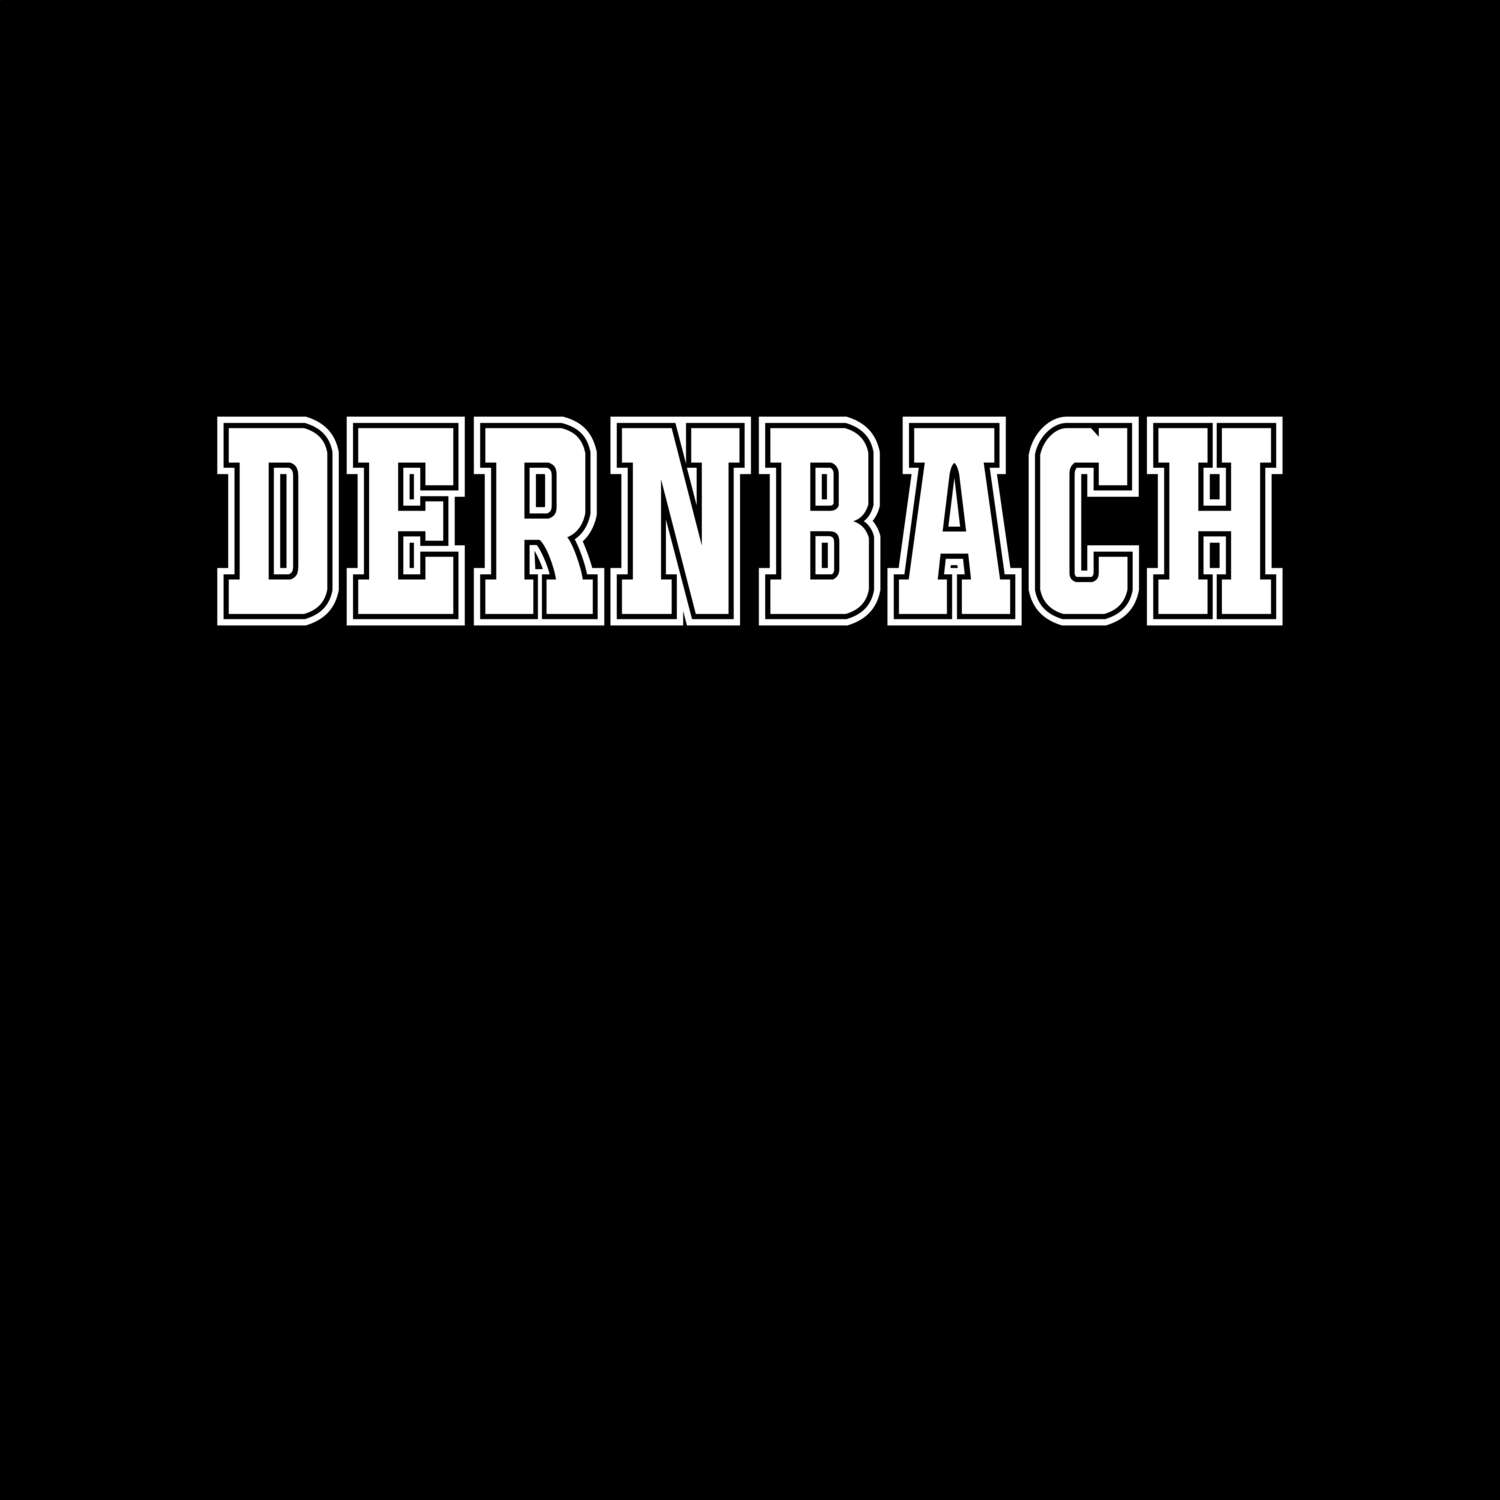 Dernbach T-Shirt »Classic«